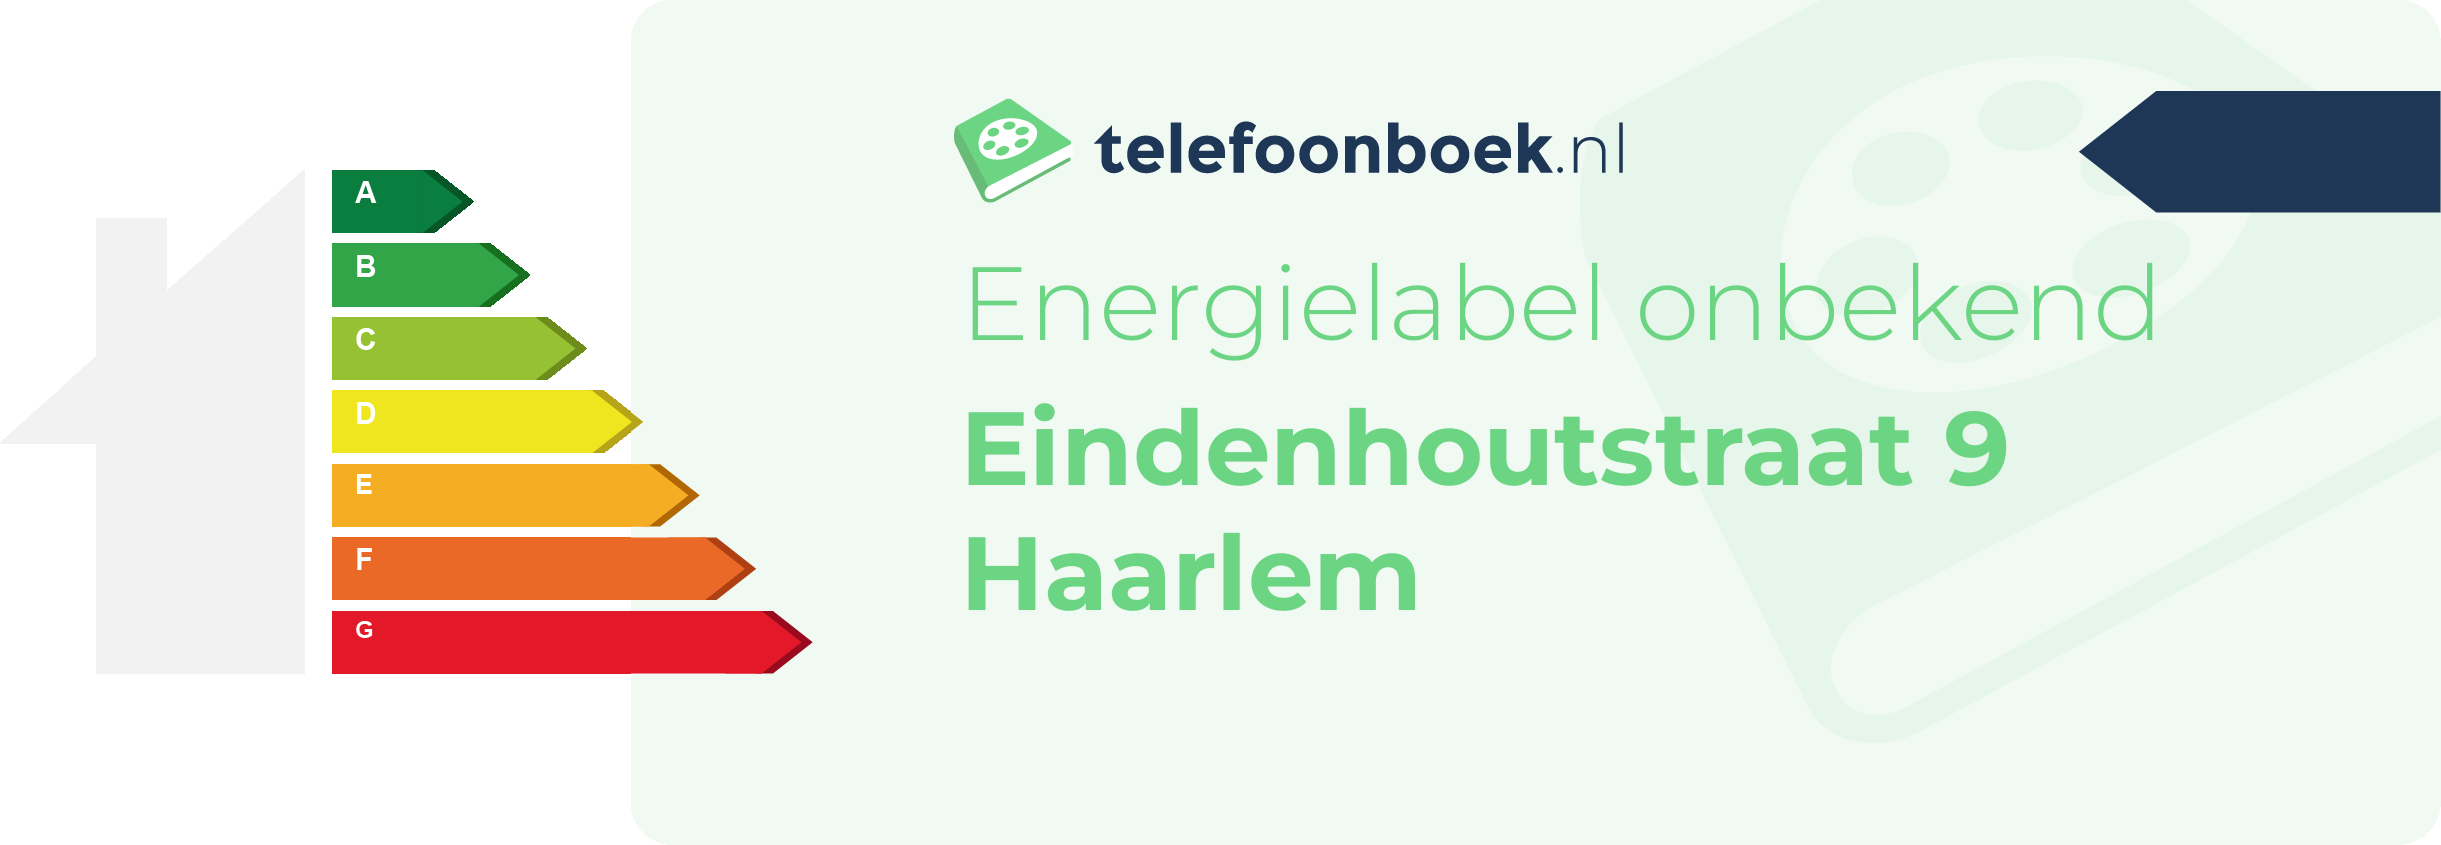 Energielabel Eindenhoutstraat 9 Haarlem